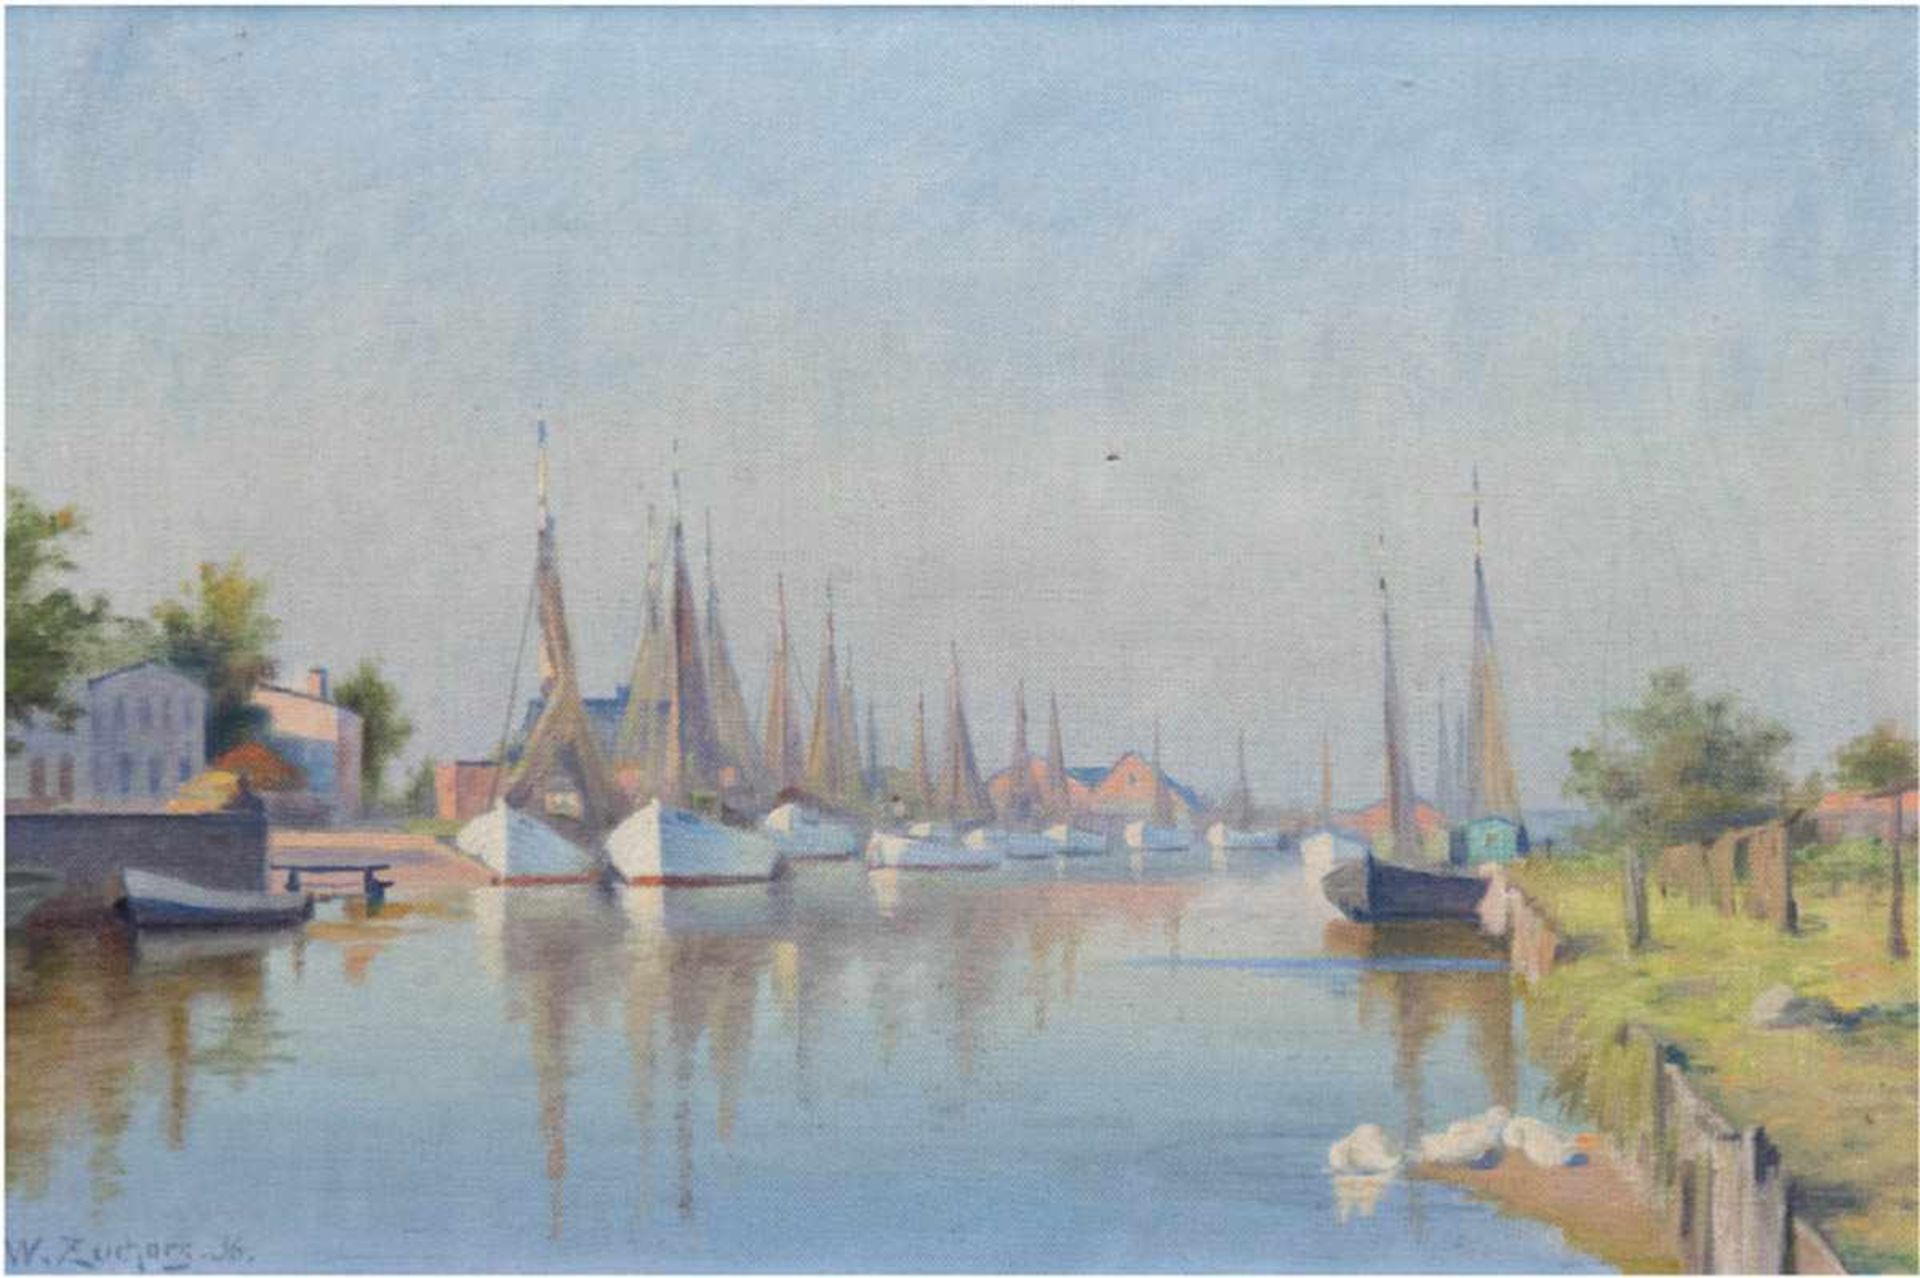 Zuchors, Walter (1870 Leba/Pommern-1945) "Hafen von Leba", Öl/Lw., sign. u. dat. '36 u.l.,kl.